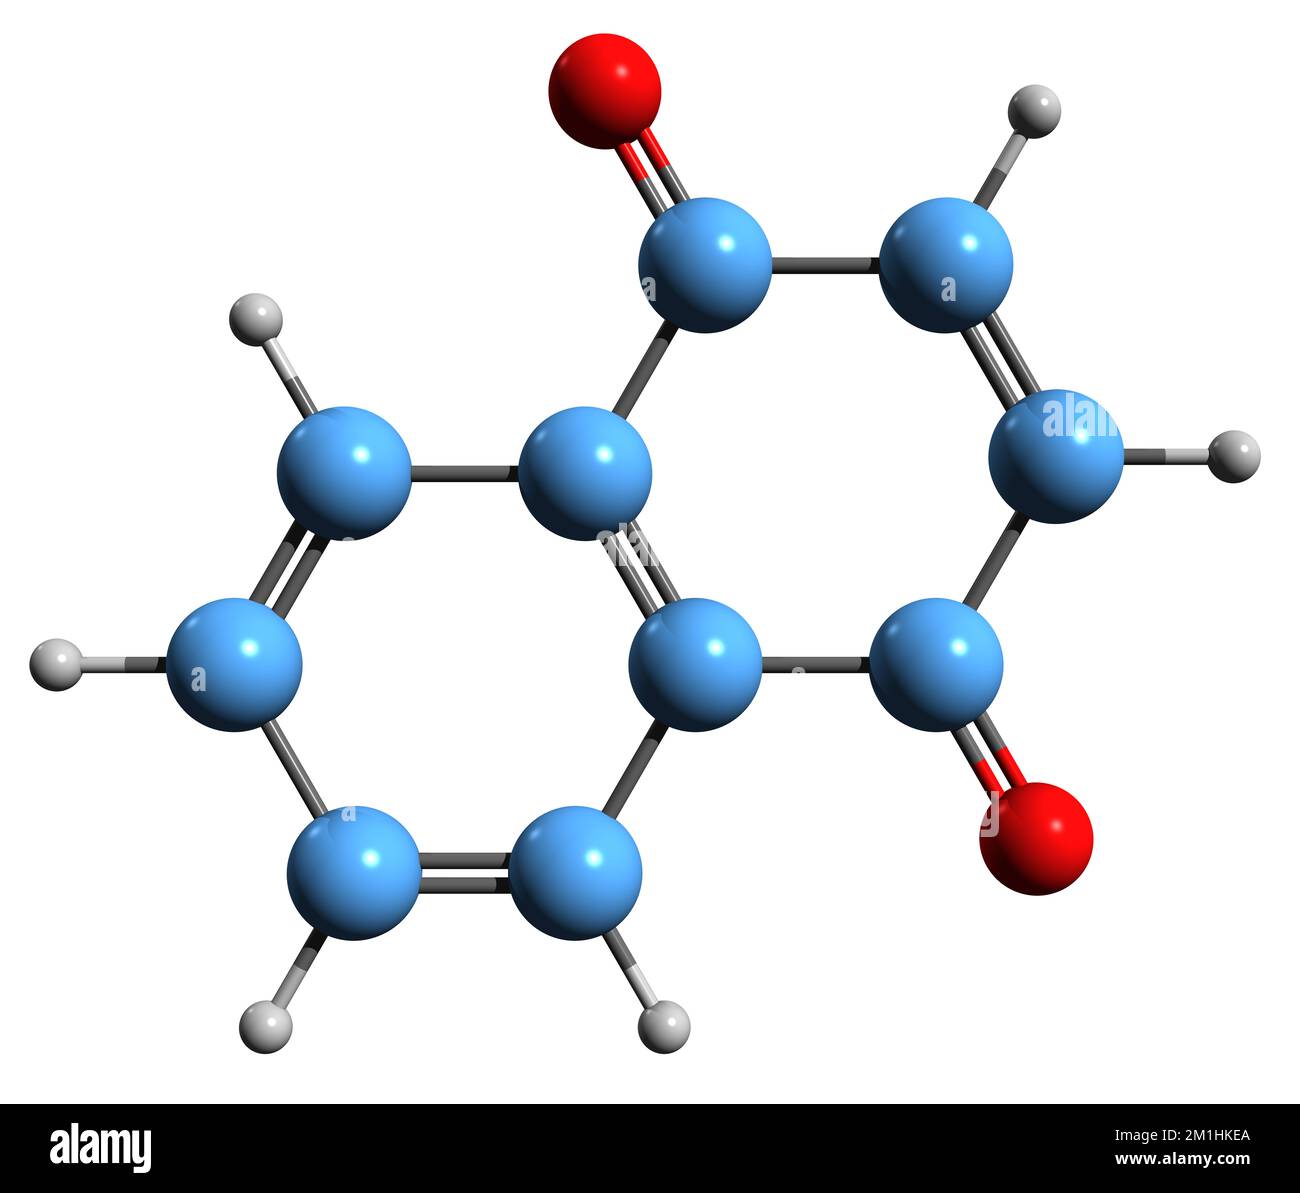 3D-Bild der Naphthochinon-Skelettformel - molekularchemische Struktur der auf weißem Hintergrund isolierten Naphthalin-Dion Stockfoto